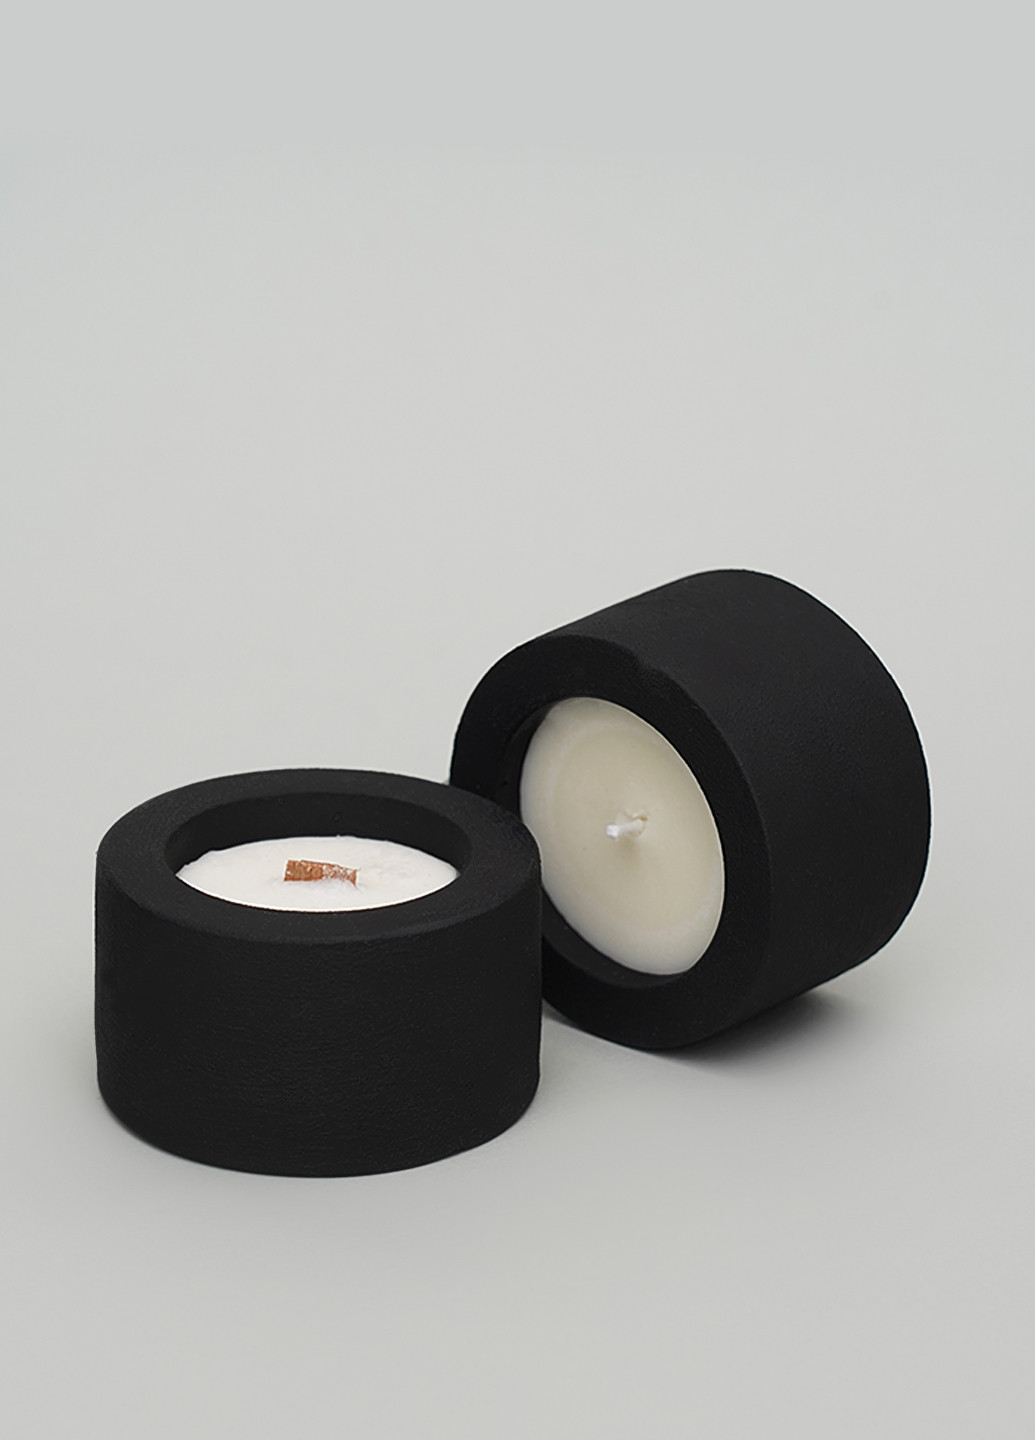 Свічка з ароматом глінтвейн та кардамон для напису ваших побажань із бавовняним гнітом Svich Shop (260264694)